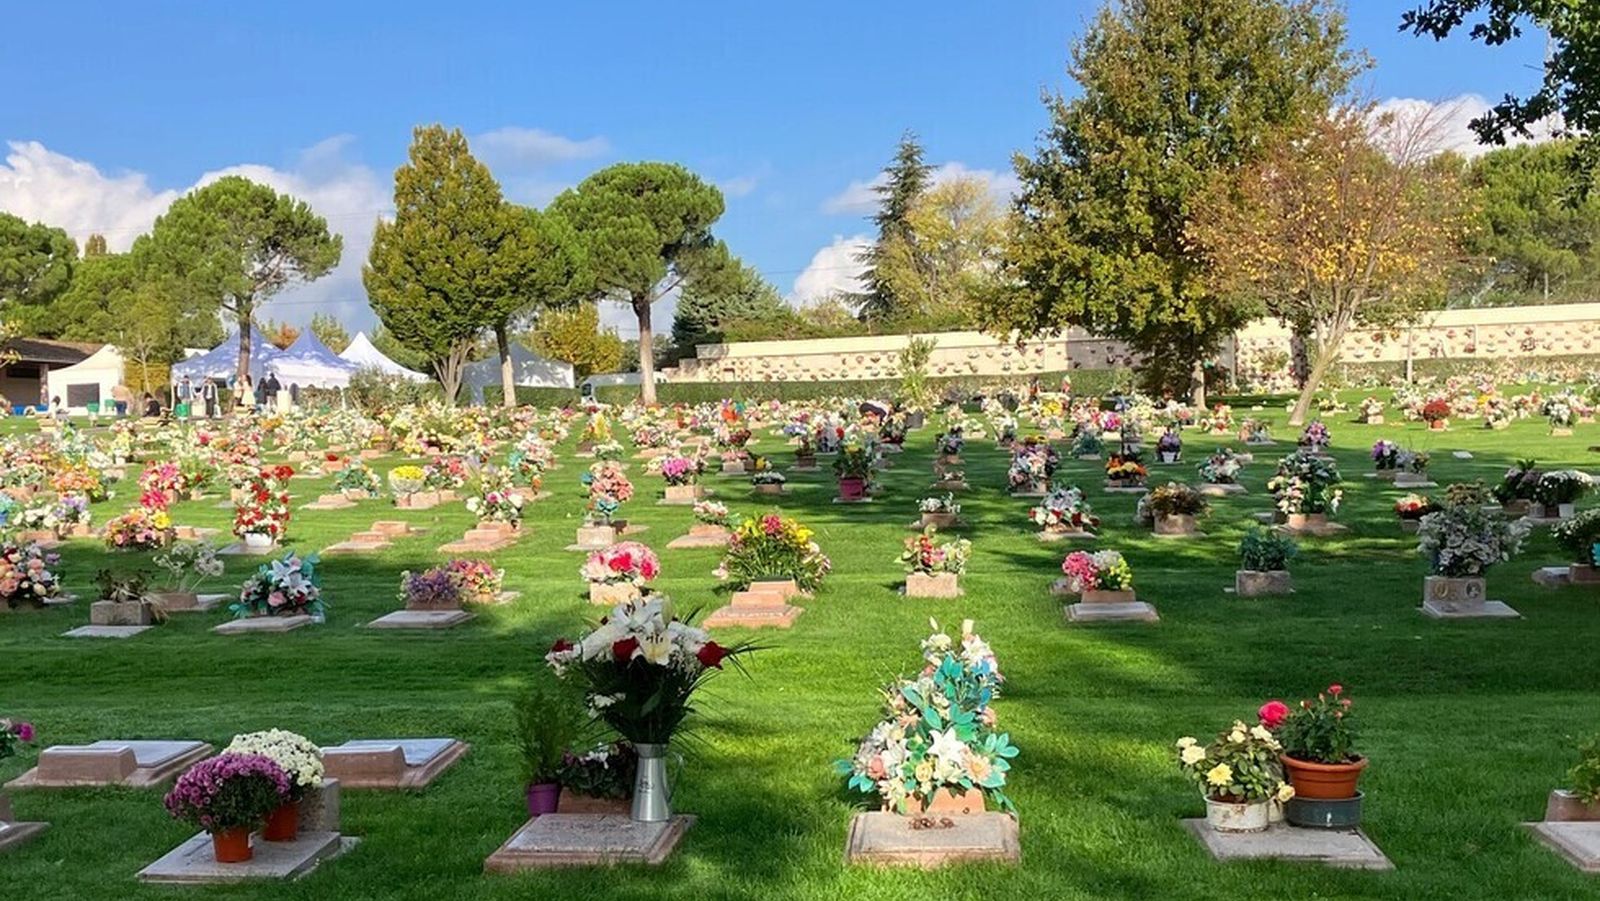 Árboles del Recuerdo, suelta de palomas y música en directo para acompañar a las familias en el Parque Cementerio de la Paz